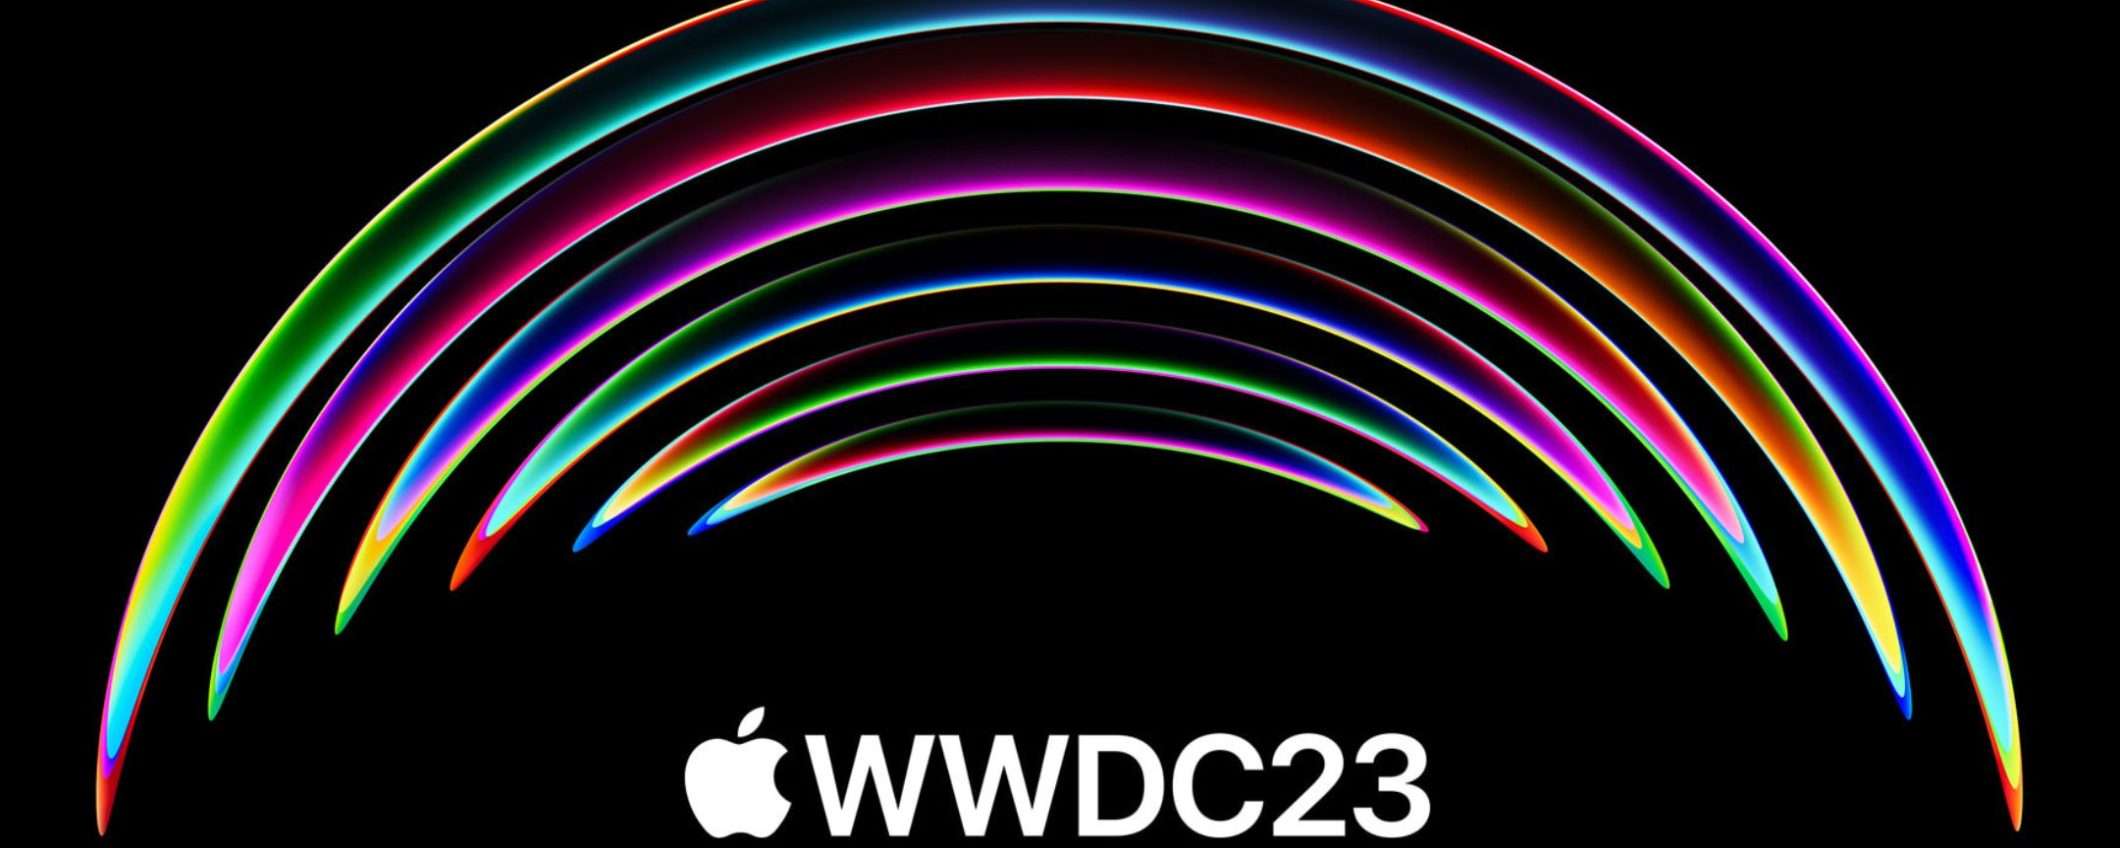 WWDC 2023: Apple svela la data, ecco quando sarà